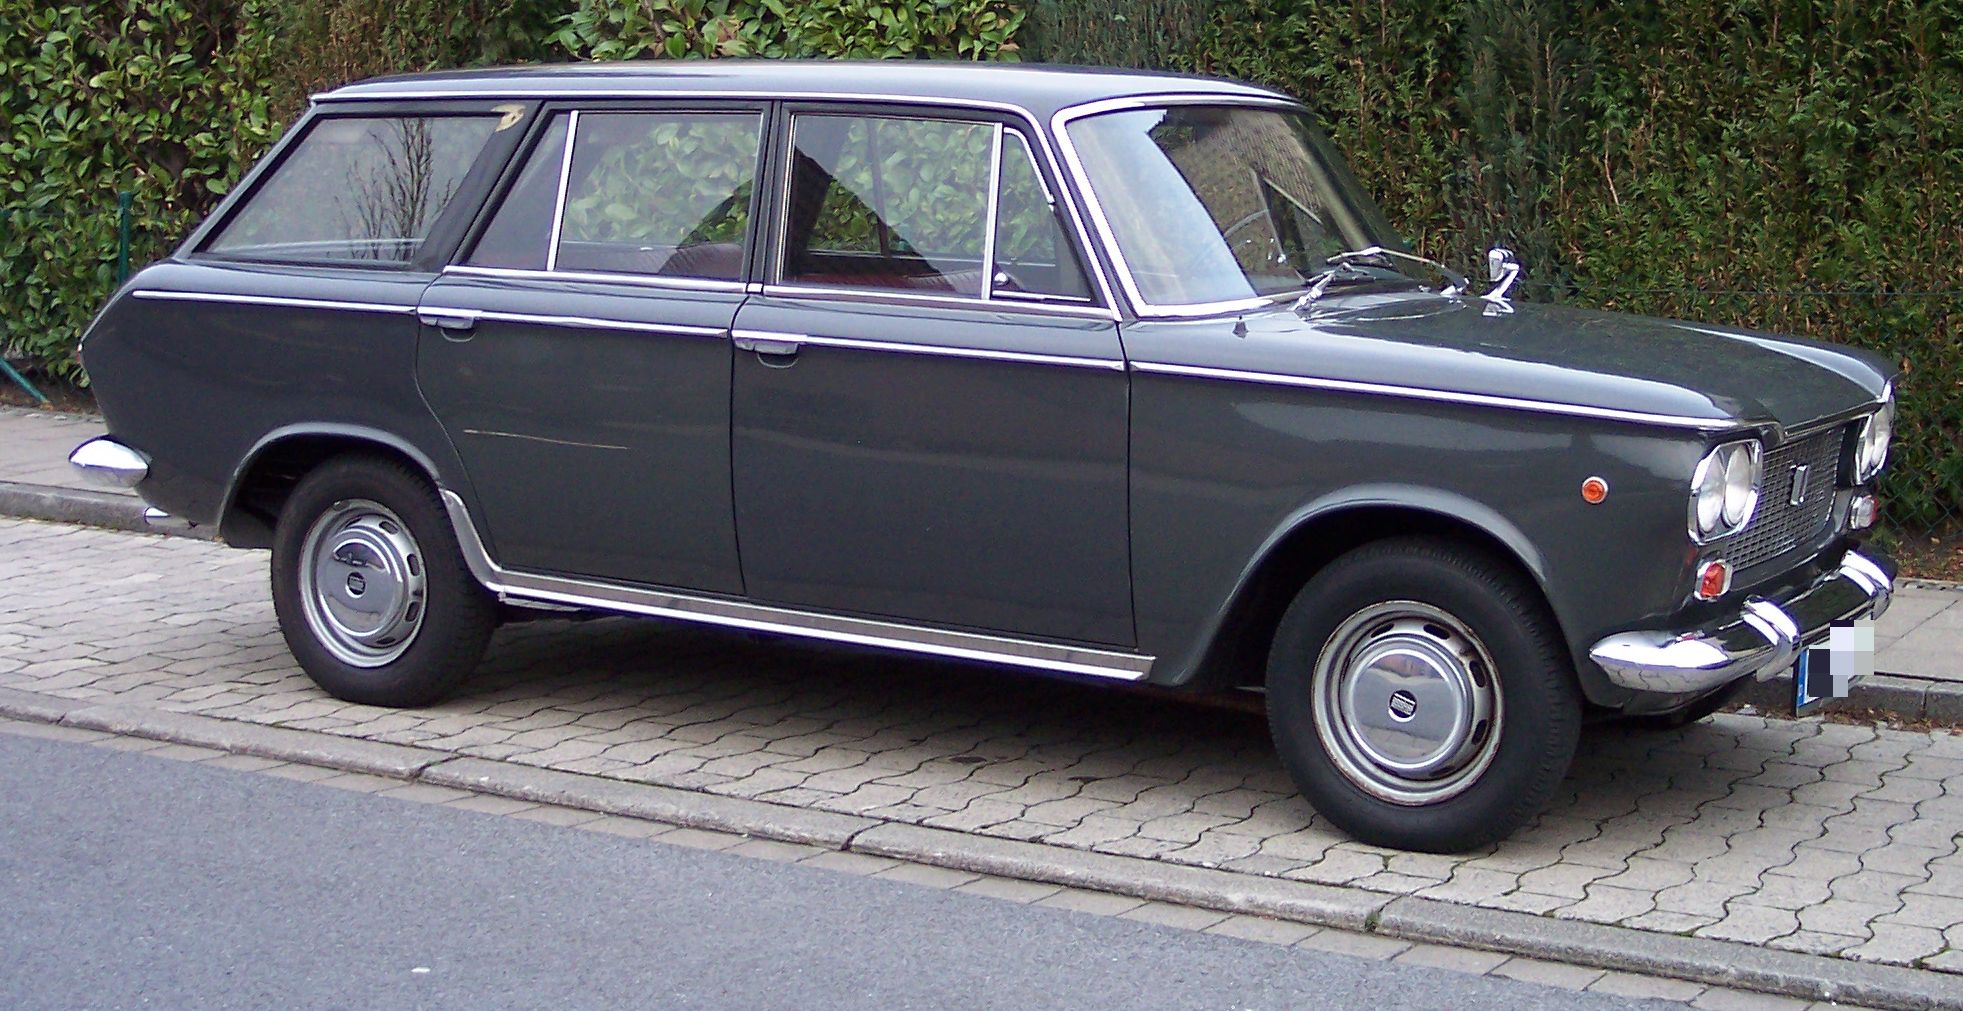 Dossier: Fiat 1300 gr vr.jpg - Wikimedia Commons